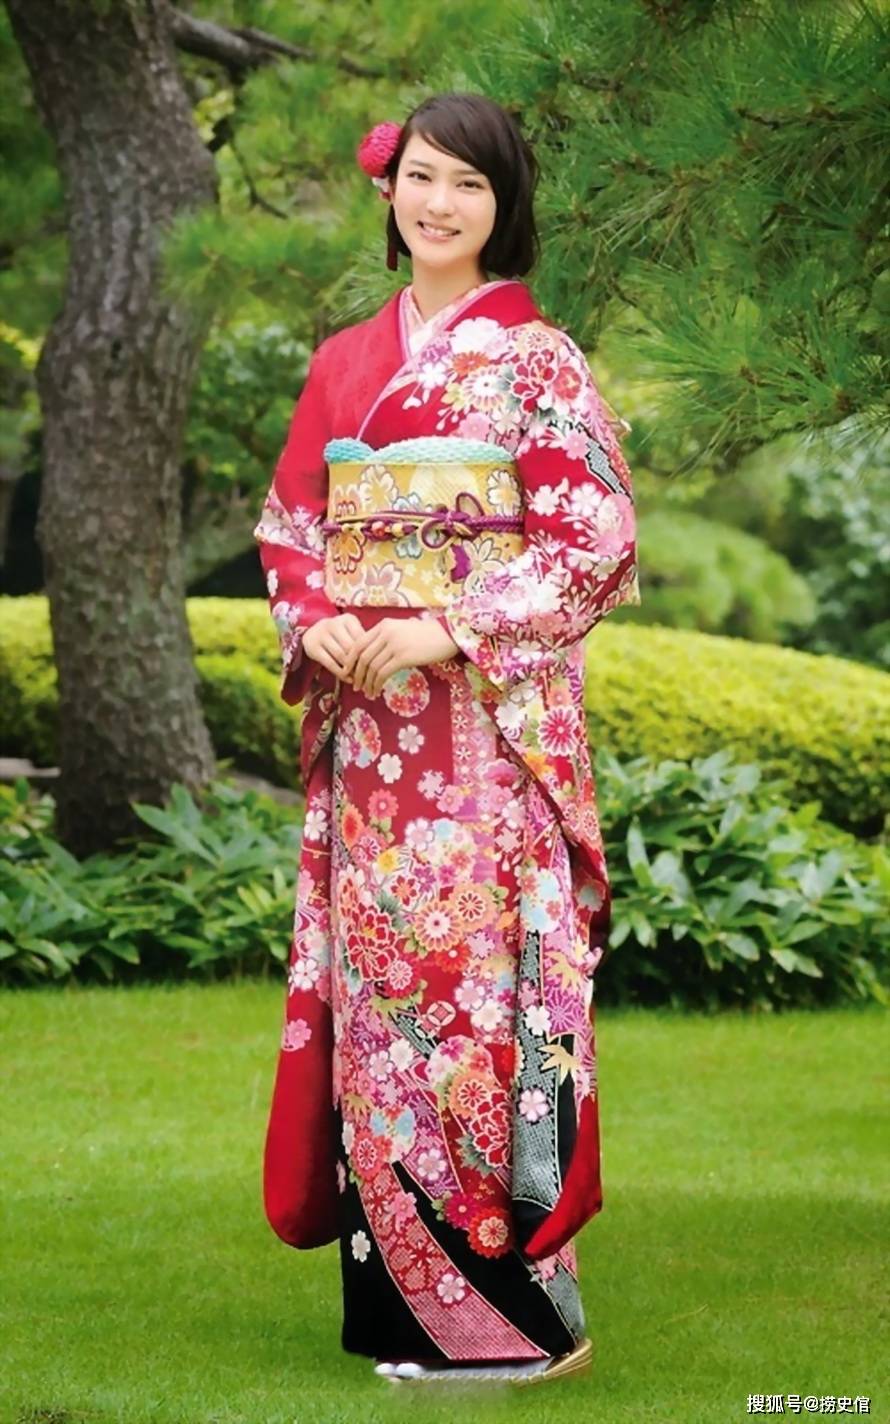 日本女星武井咲和服写真,绚烂多彩宛如待嫁新娘